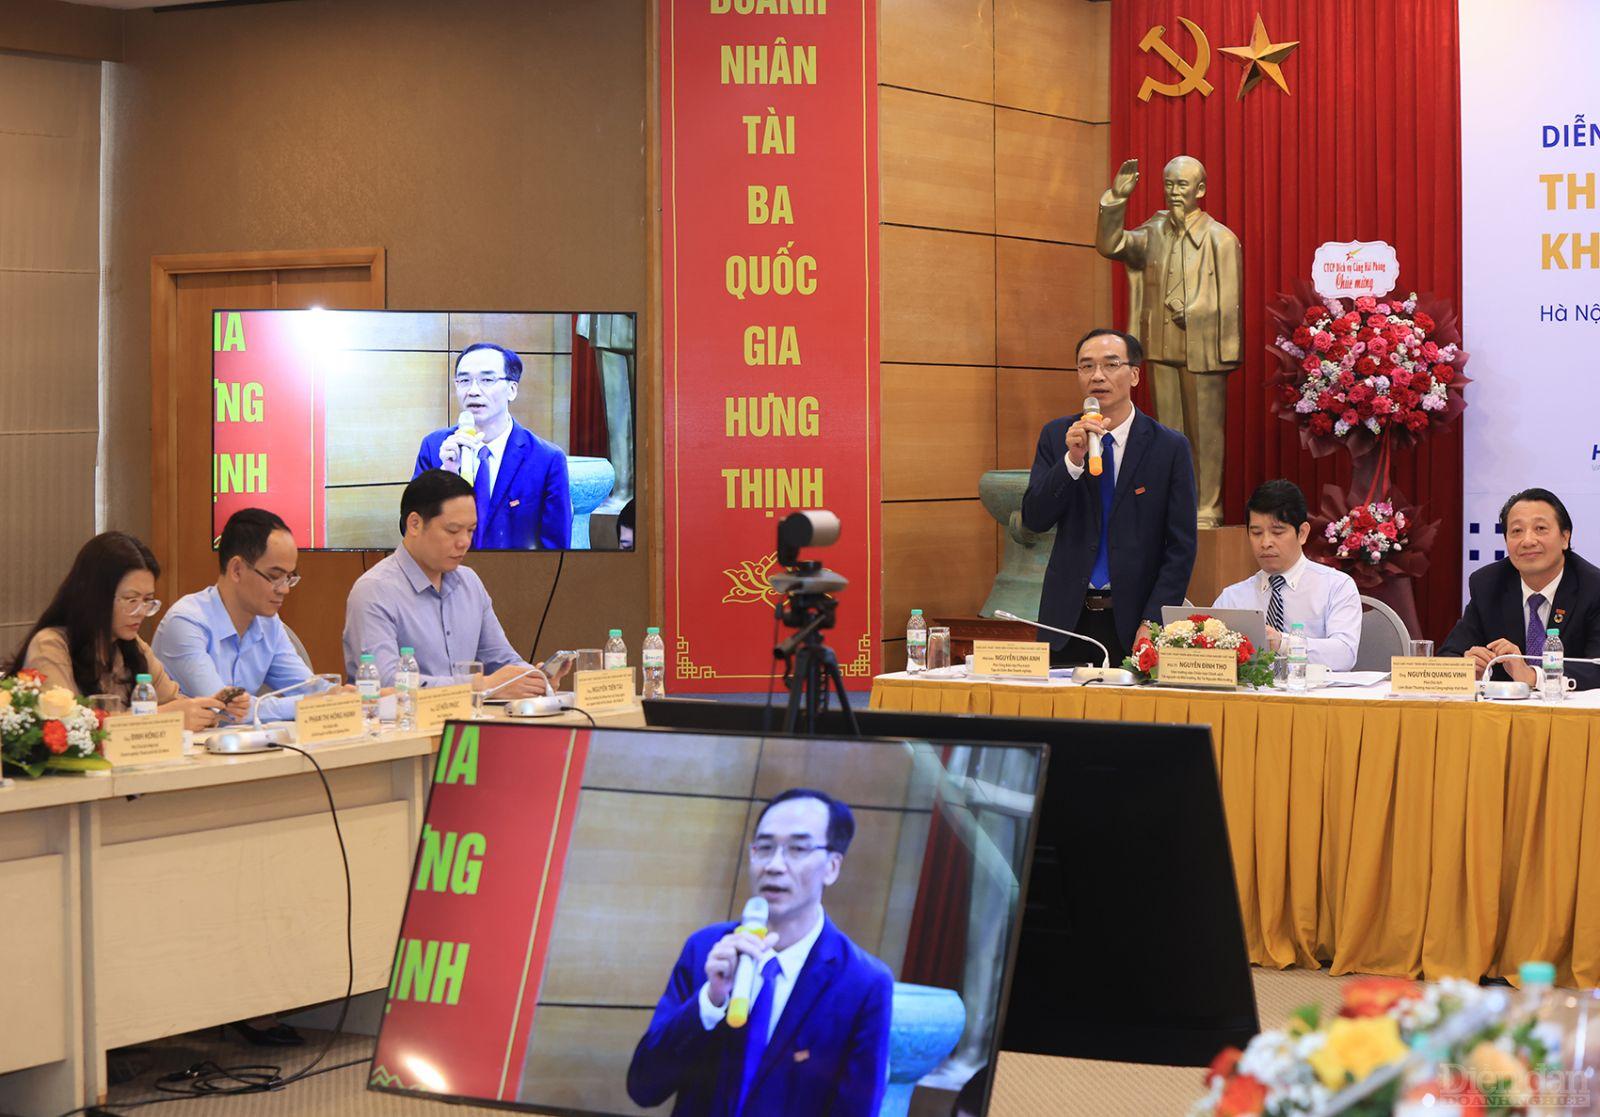 Nhà báo Nguyễn Linh Anh – Phó Tổng biên tập phụ trách Tạp chí Diễn đàn Doanh nghiệp điều phối phiên thảo luận.